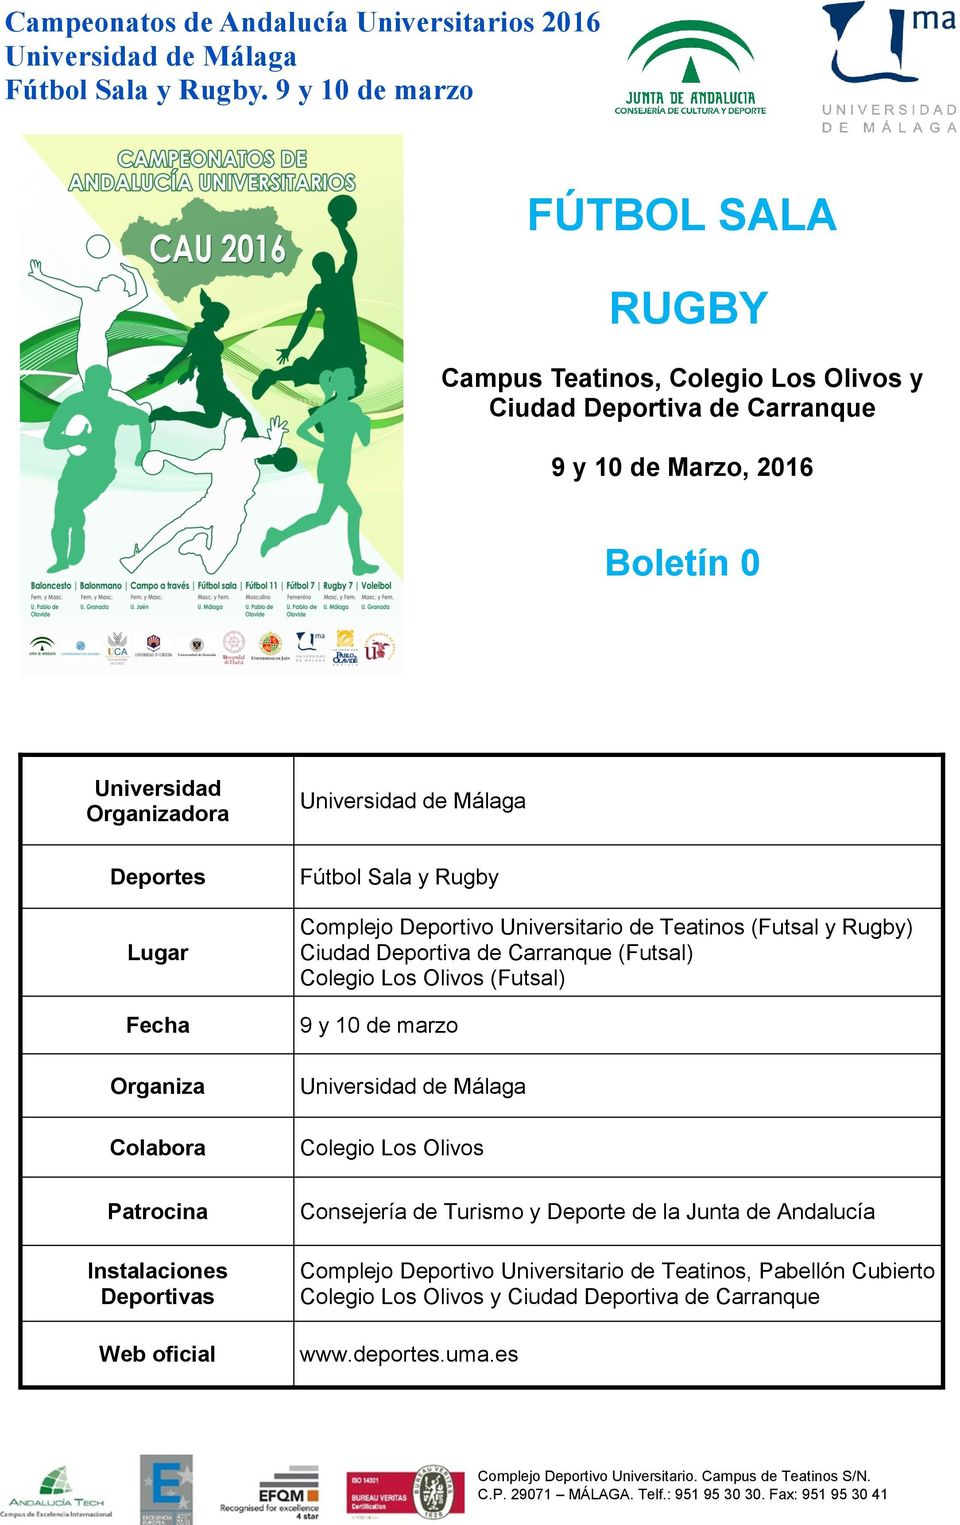 (Futsal y Rugby) Ciudad Deportiva de Carranque (Futsal) Colegio Los Olivos (Futsal) 9 y 10 de marzo Colegio Los Olivos Consejería de Turismo y Deporte